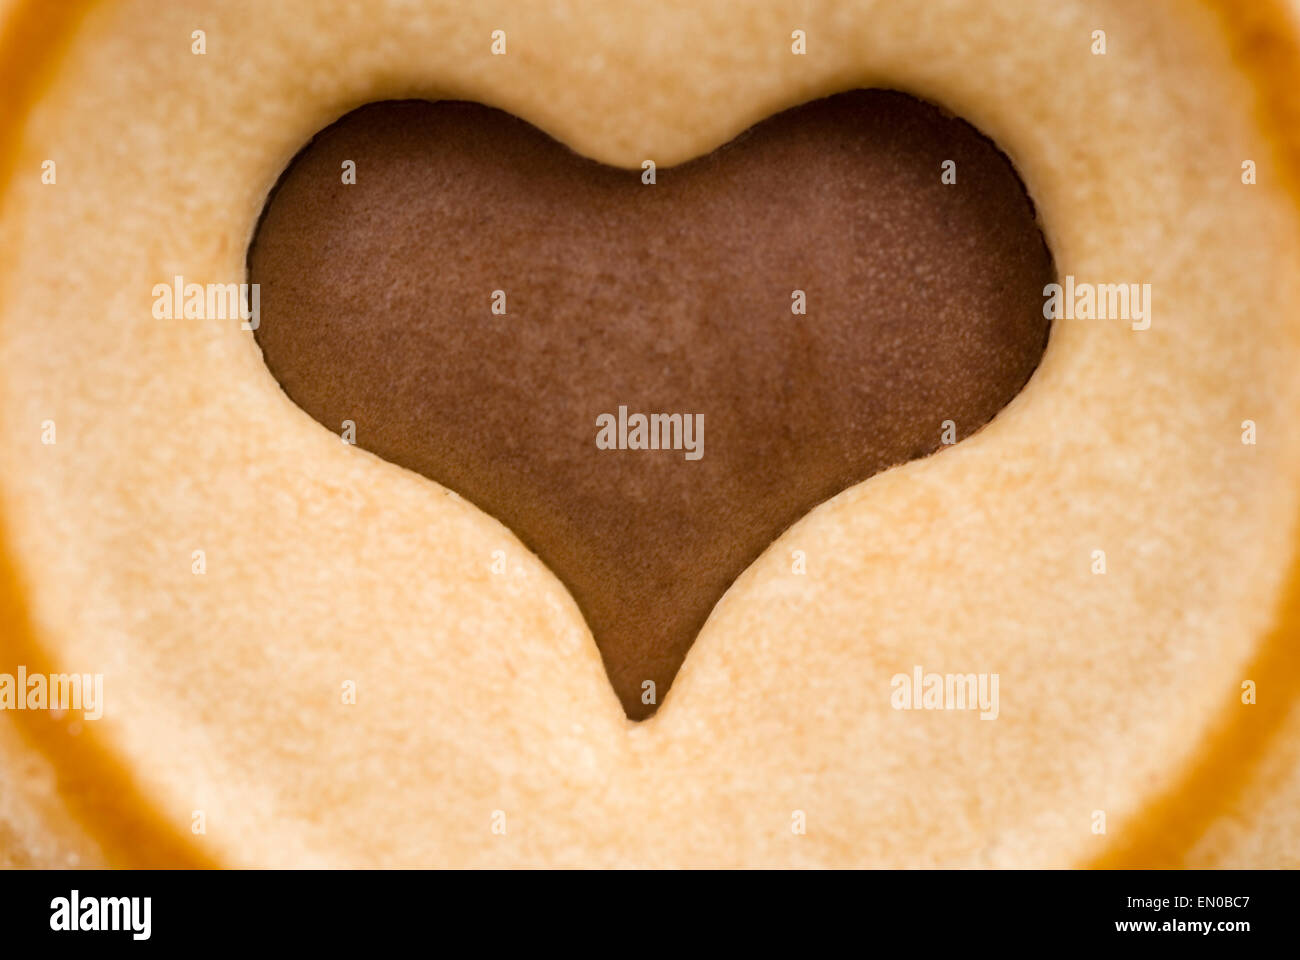 Chocolade coeur dans un cookie biscuit le food studio shot Banque D'Images